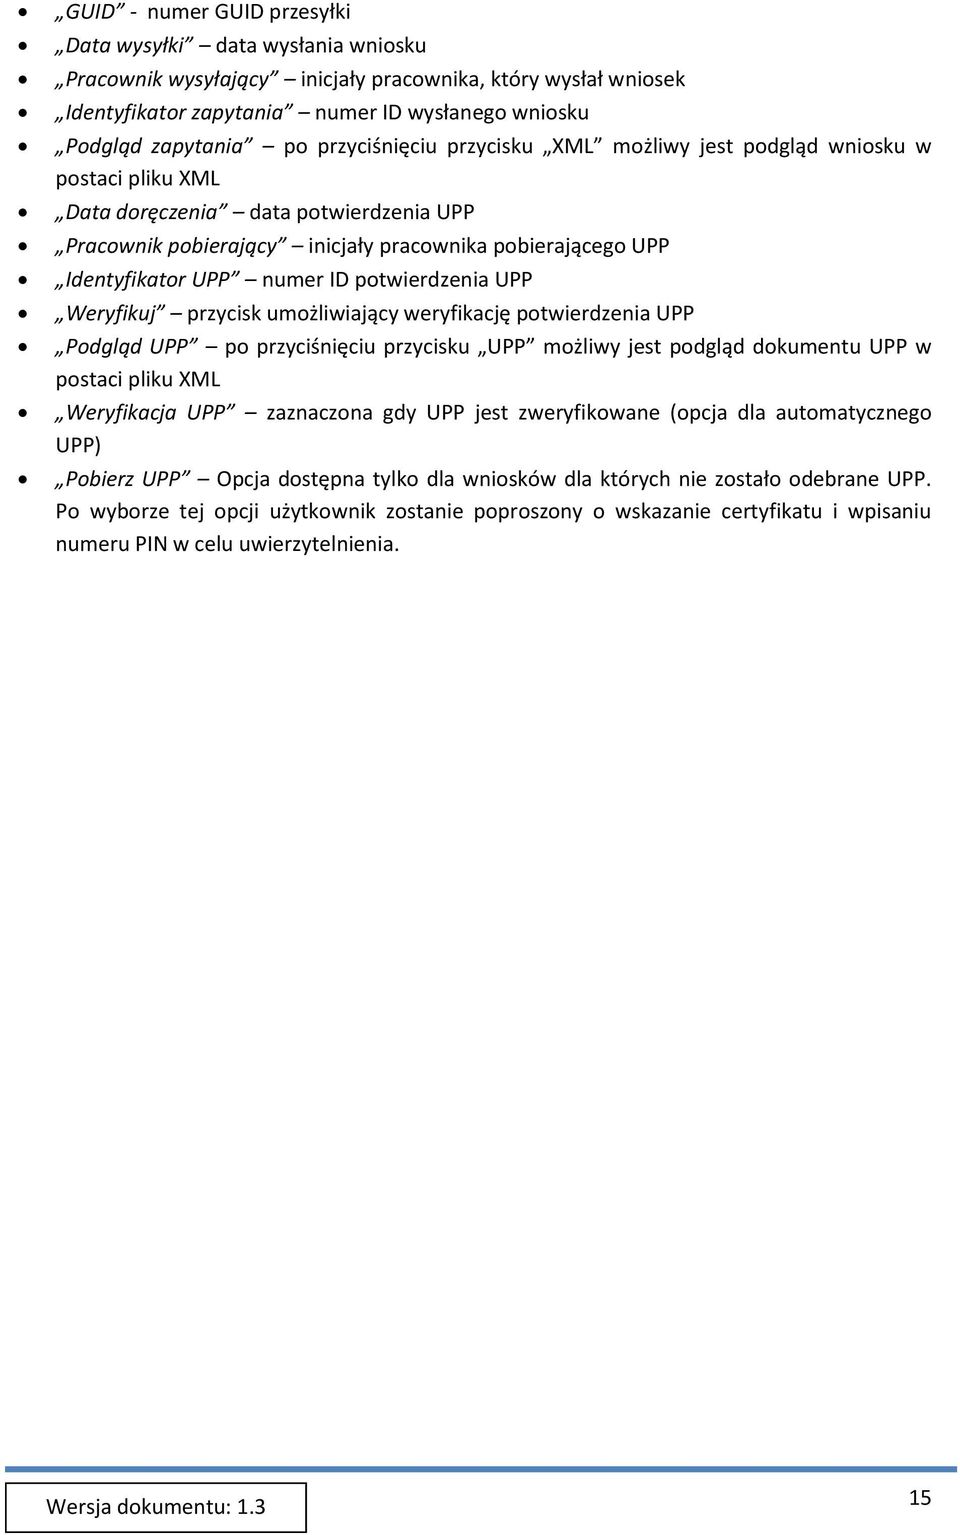 ID potwierdzenia UPP Weryfikuj przycisk umożliwiający weryfikację potwierdzenia UPP Podgląd UPP po przyciśnięciu przycisku UPP możliwy jest podgląd dokumentu UPP w postaci pliku XML Weryfikacja UPP